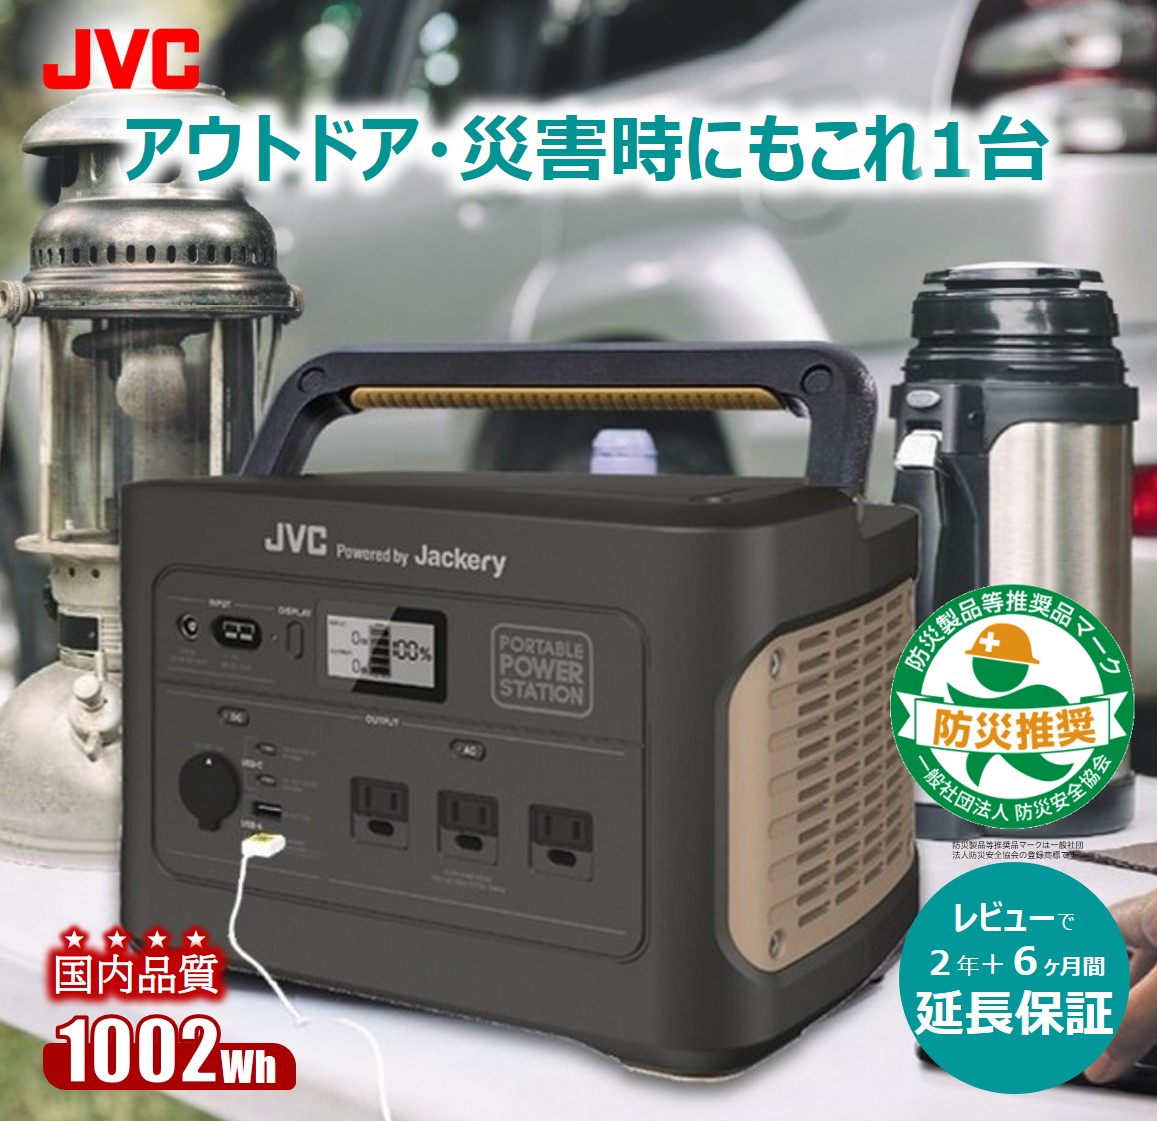 JVC JVCケンウッド ポータブル電源 BN-RB10-C